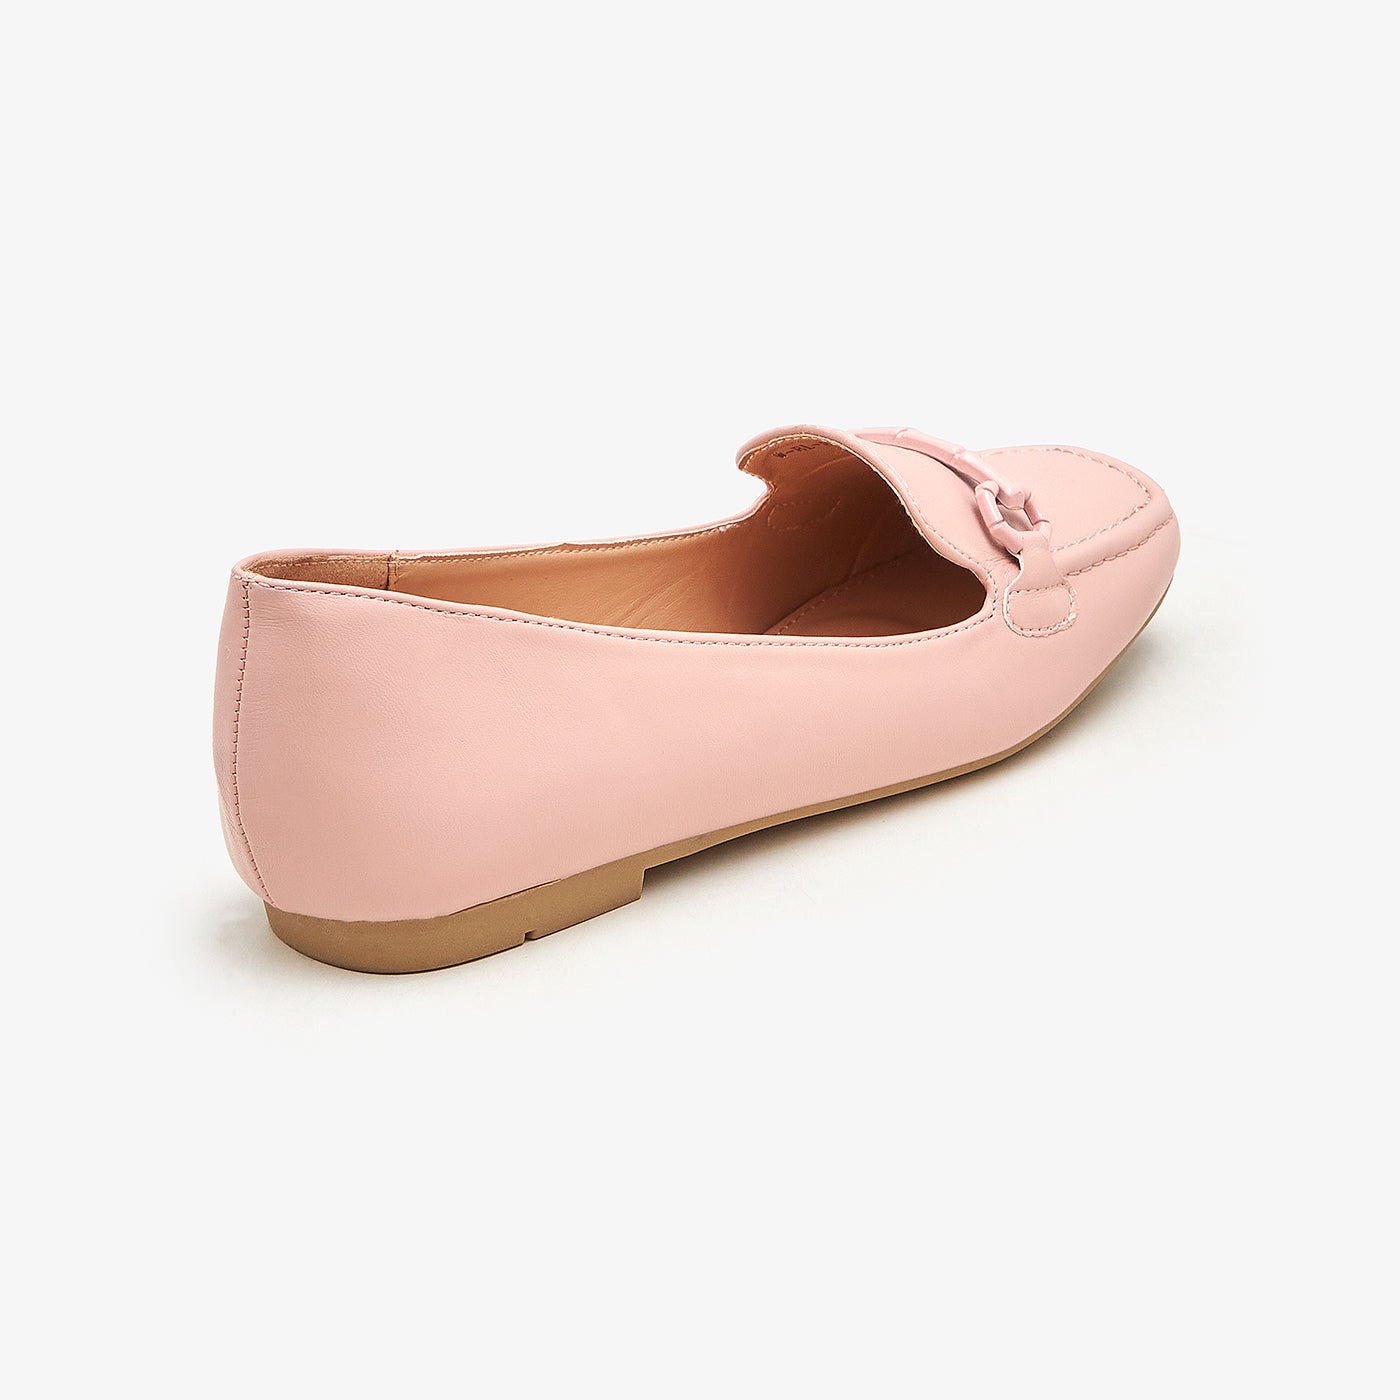 Women's Sleek Loafers